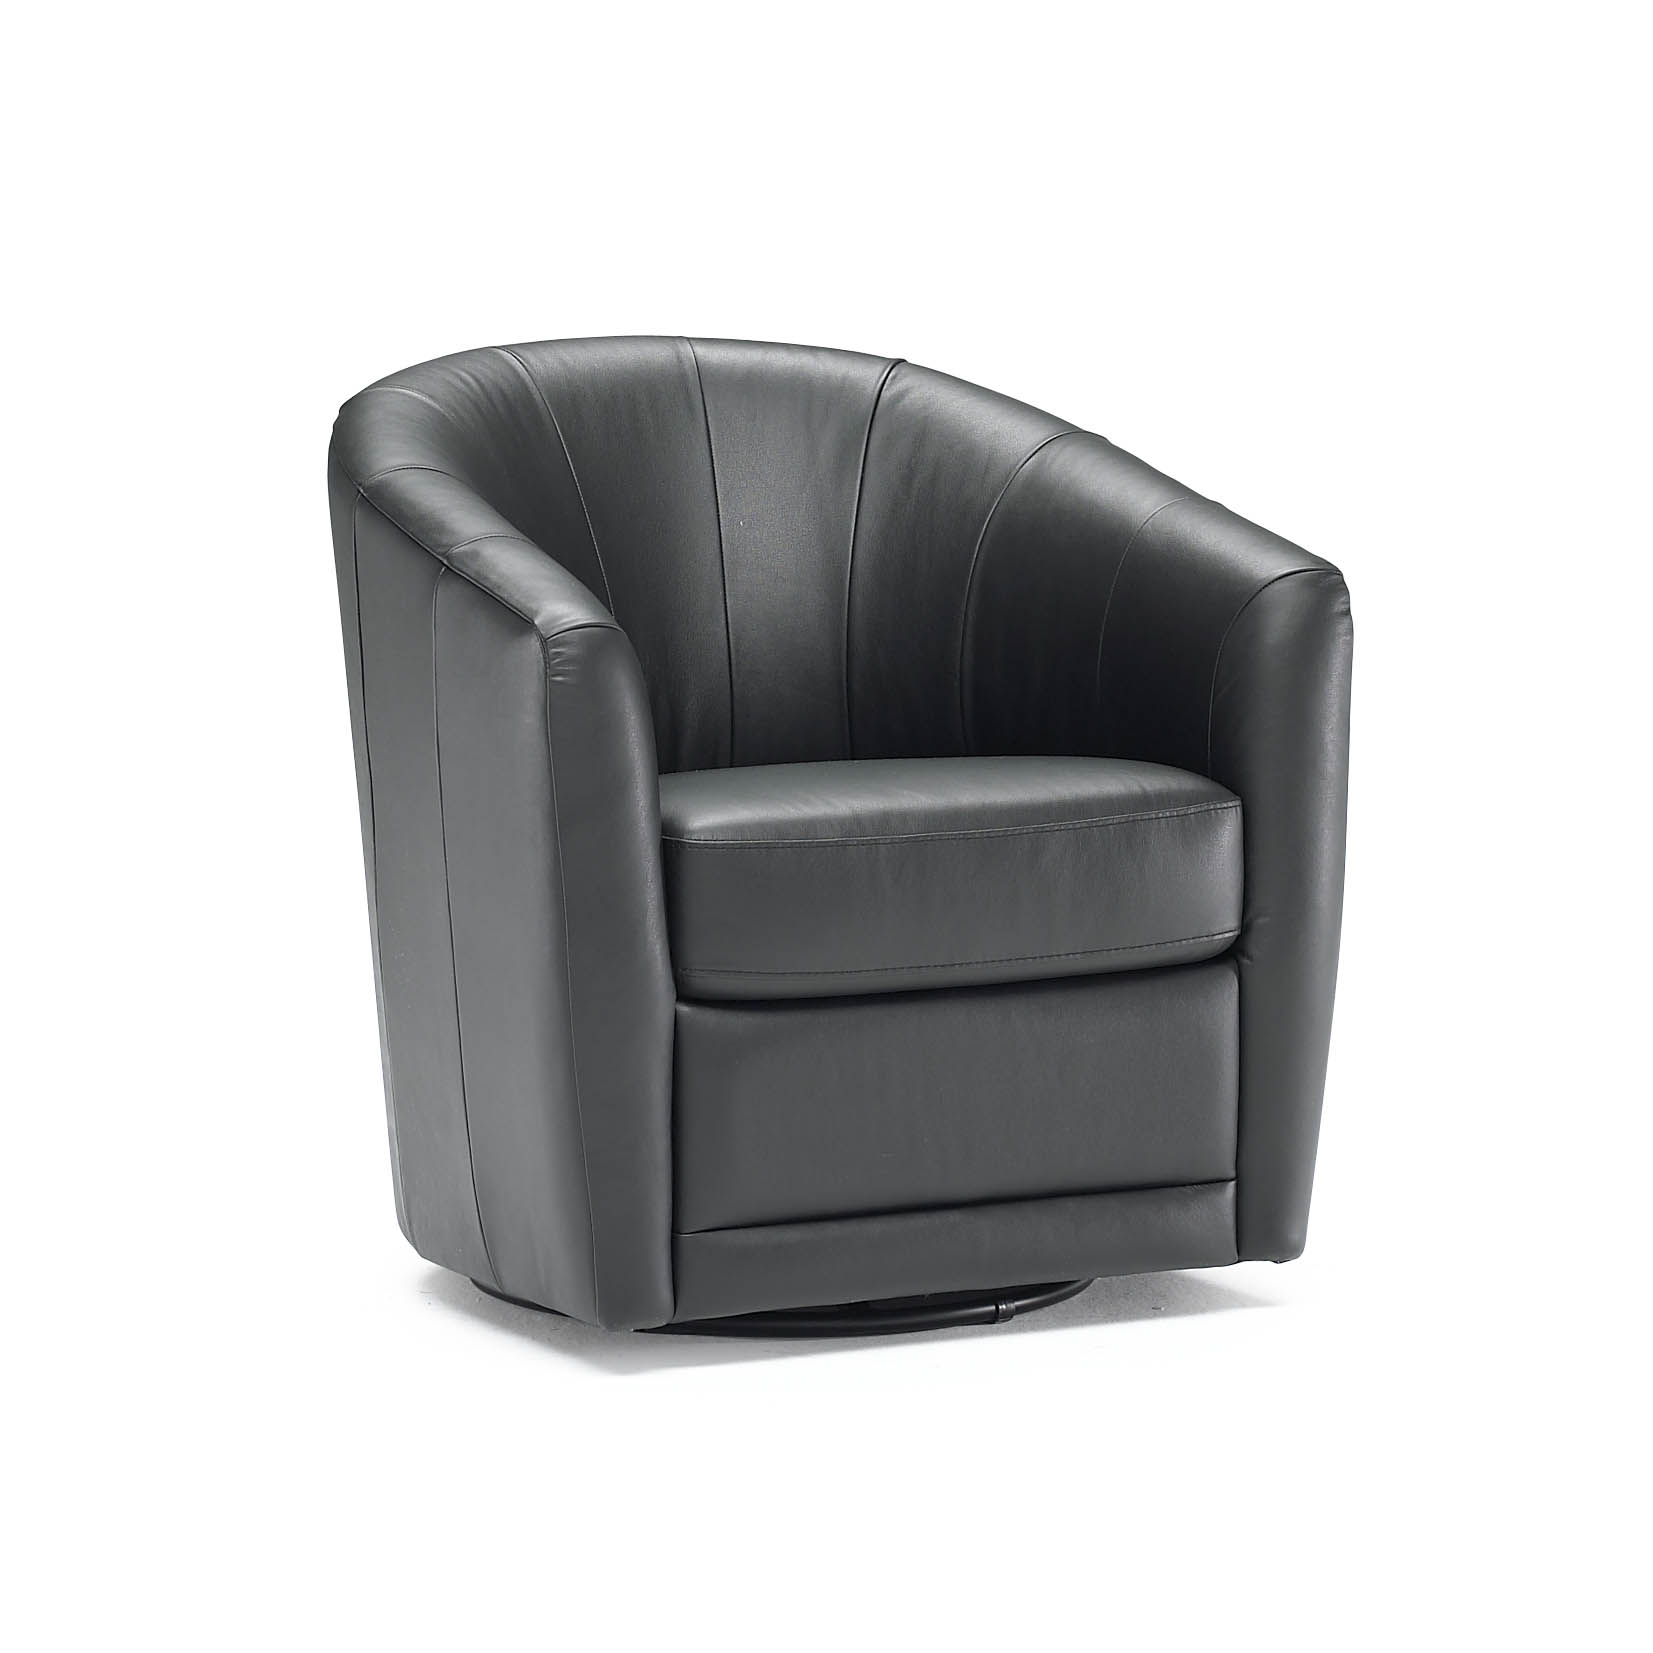 Natuzzi_B596_Leather_Swivel_Chair